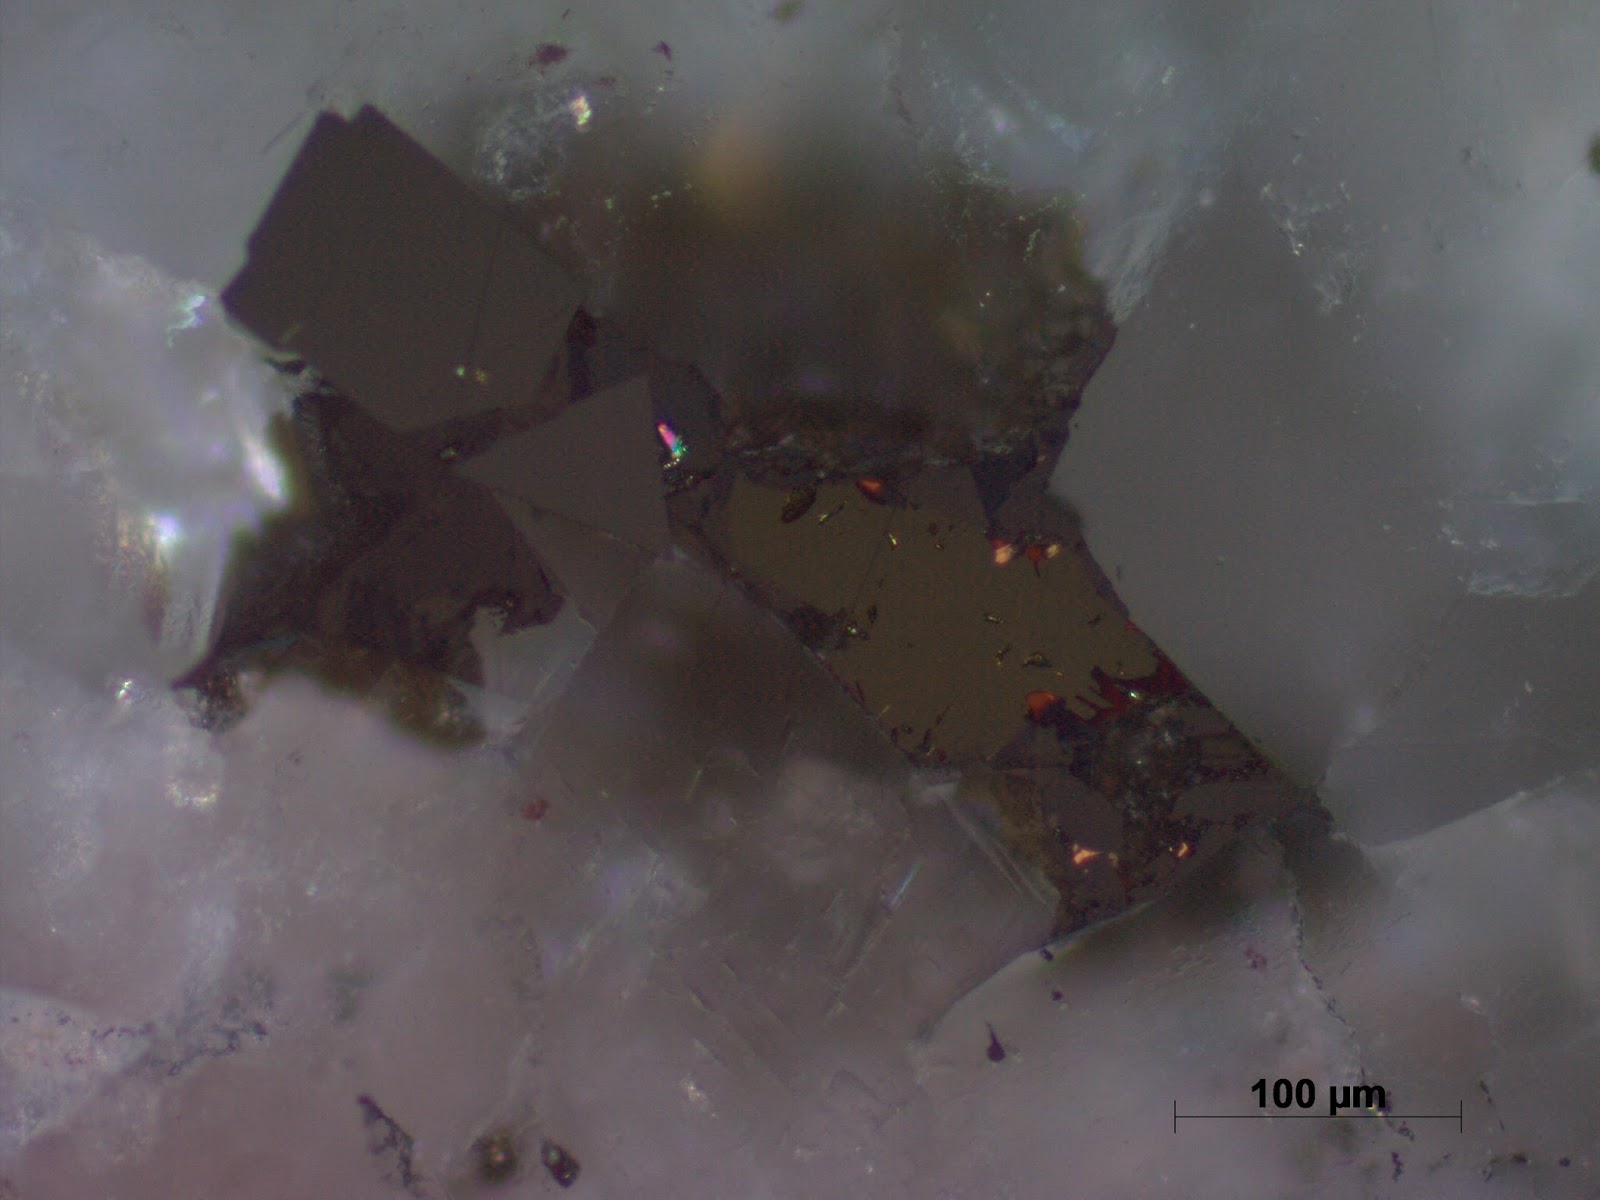 Chalcopyrite sphalerite Latimojong Sulawesi Indonesia "Chalcopyrite disease" in sphalerite Sph grey high internal reflections